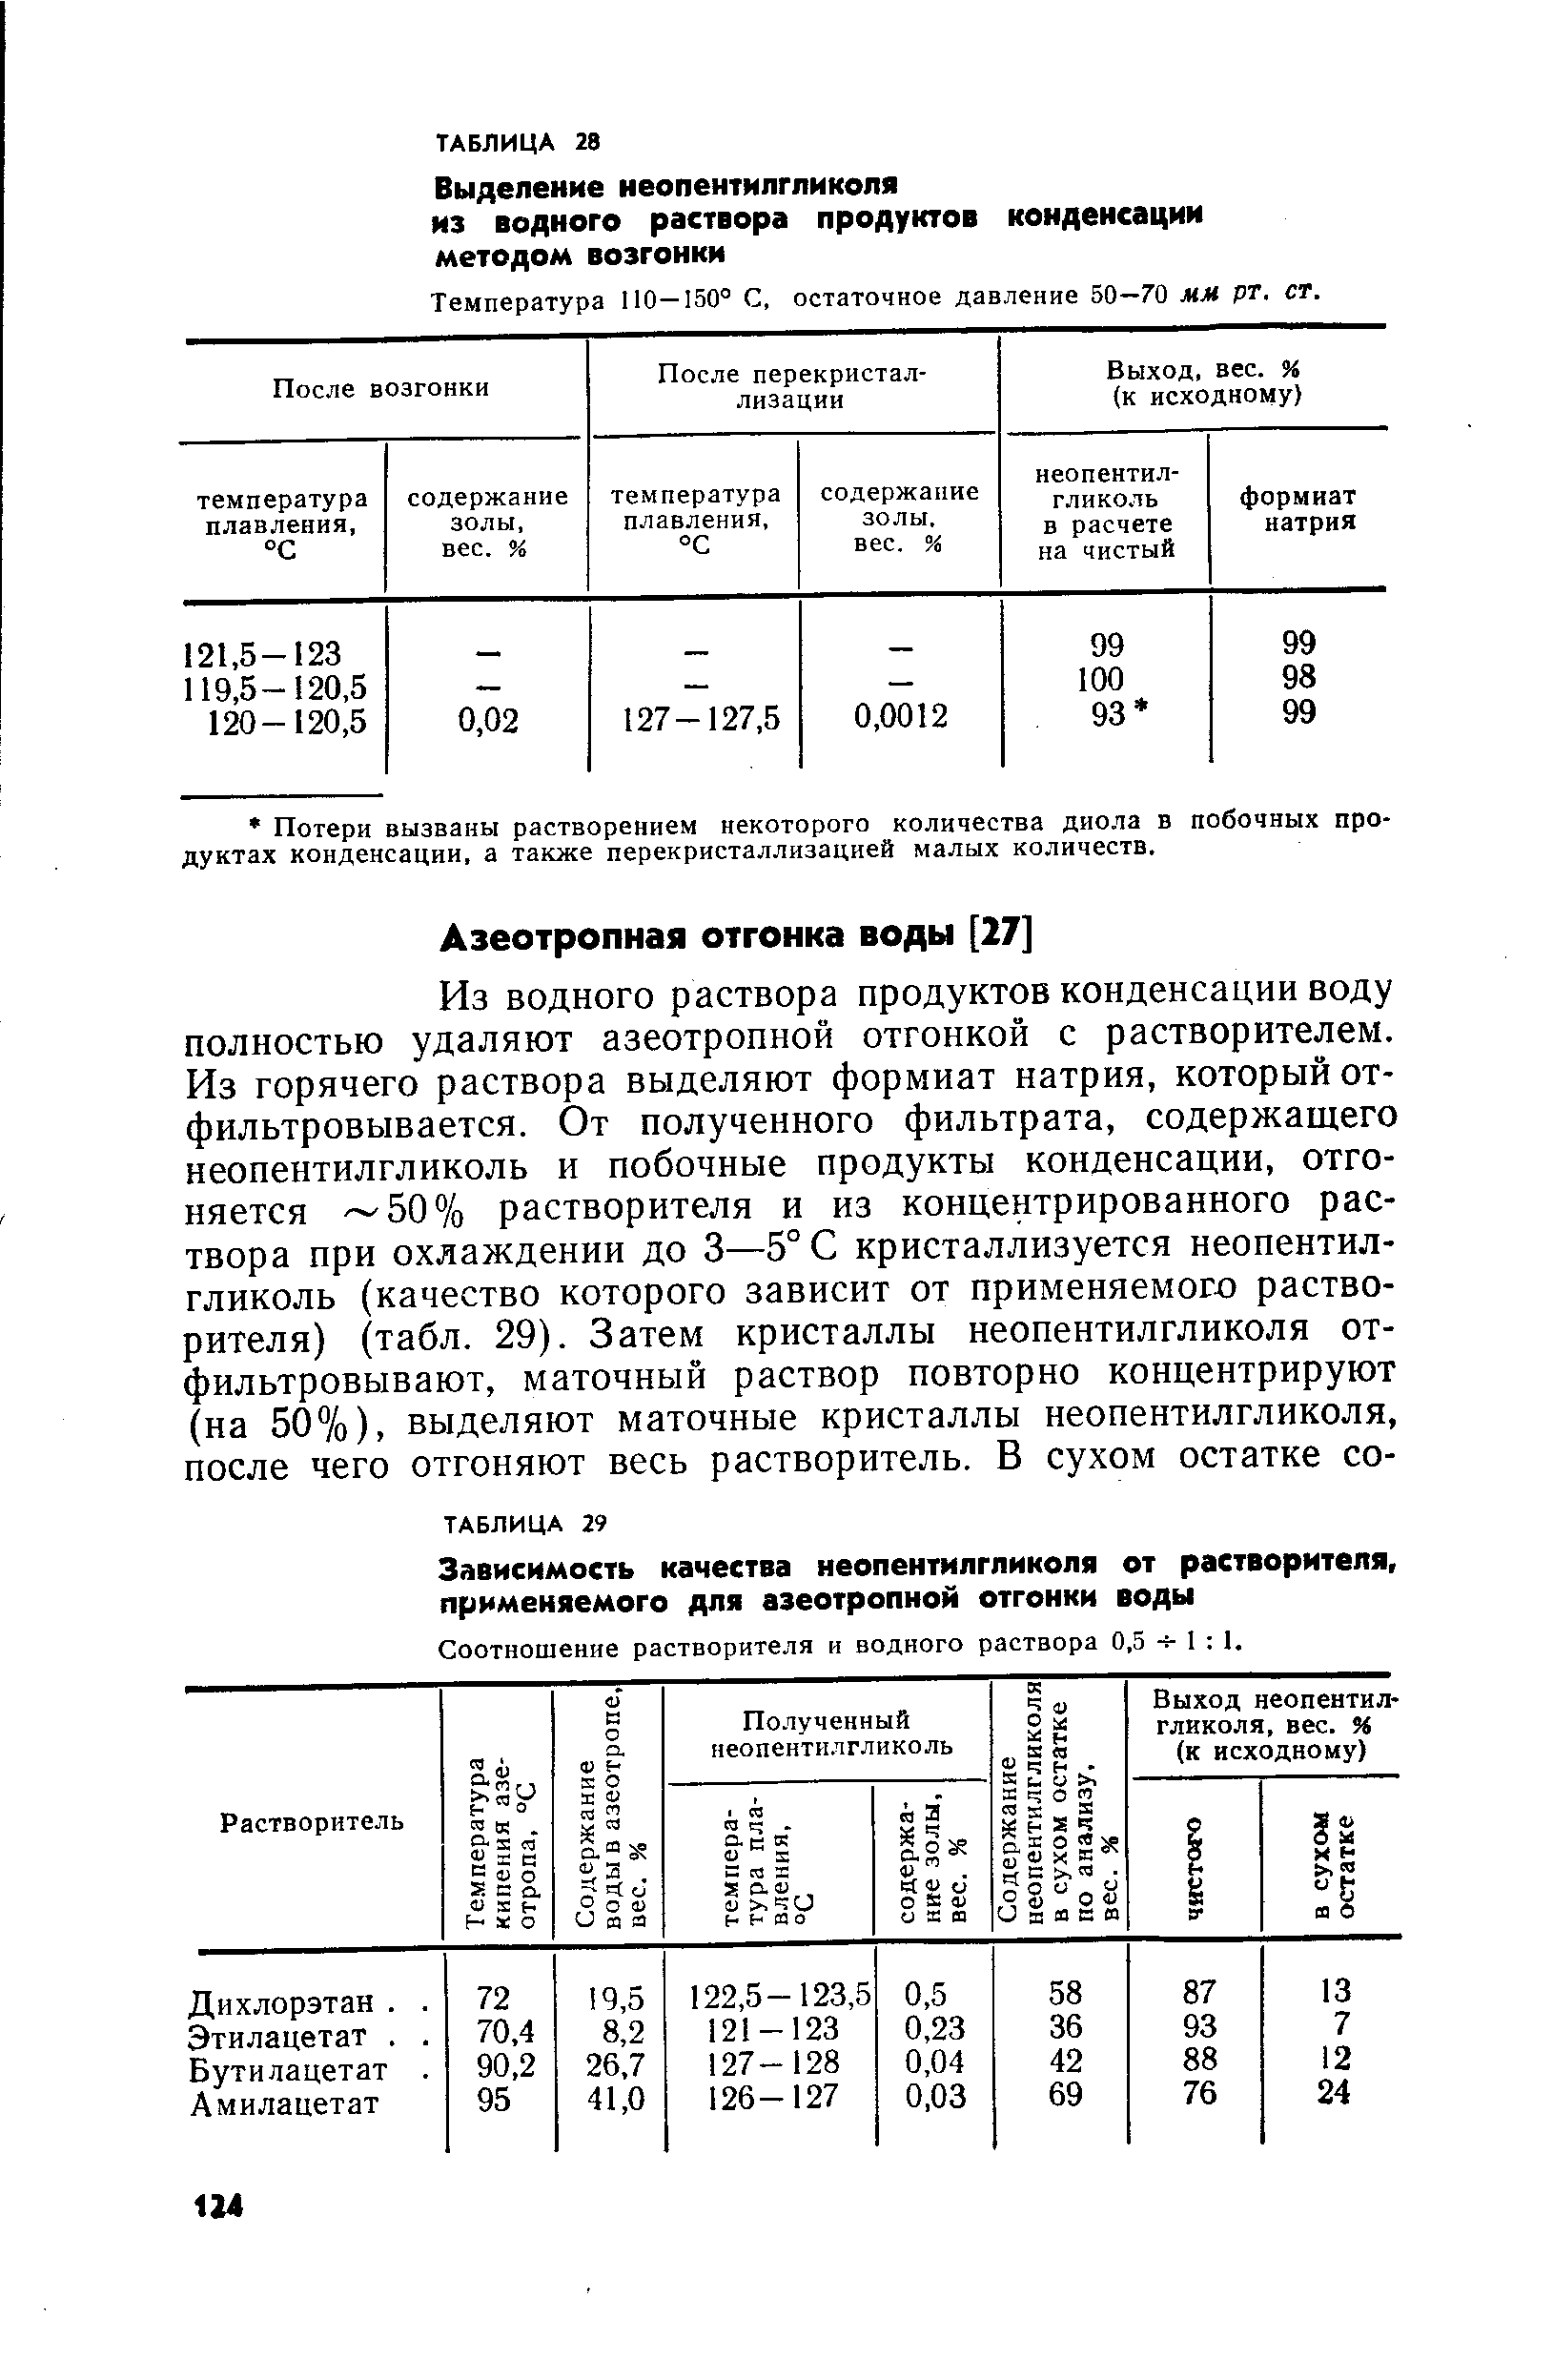 Соотношение растворителя и водного раствора 0,5 ч- 1 1.